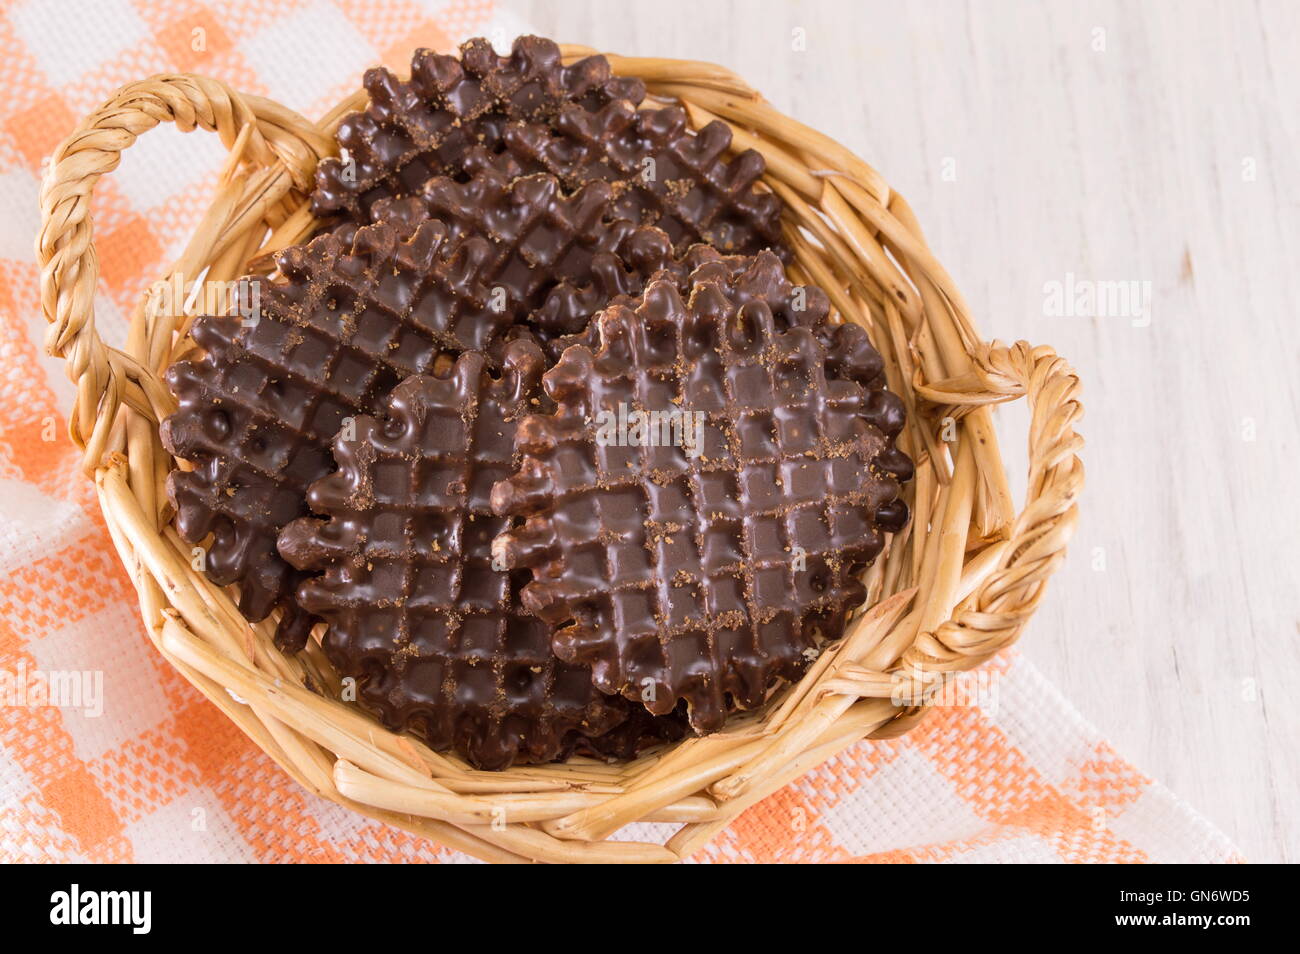 Ricoperta di cioccolato round biscotti fatti in casa nel cesto in legno Foto Stock